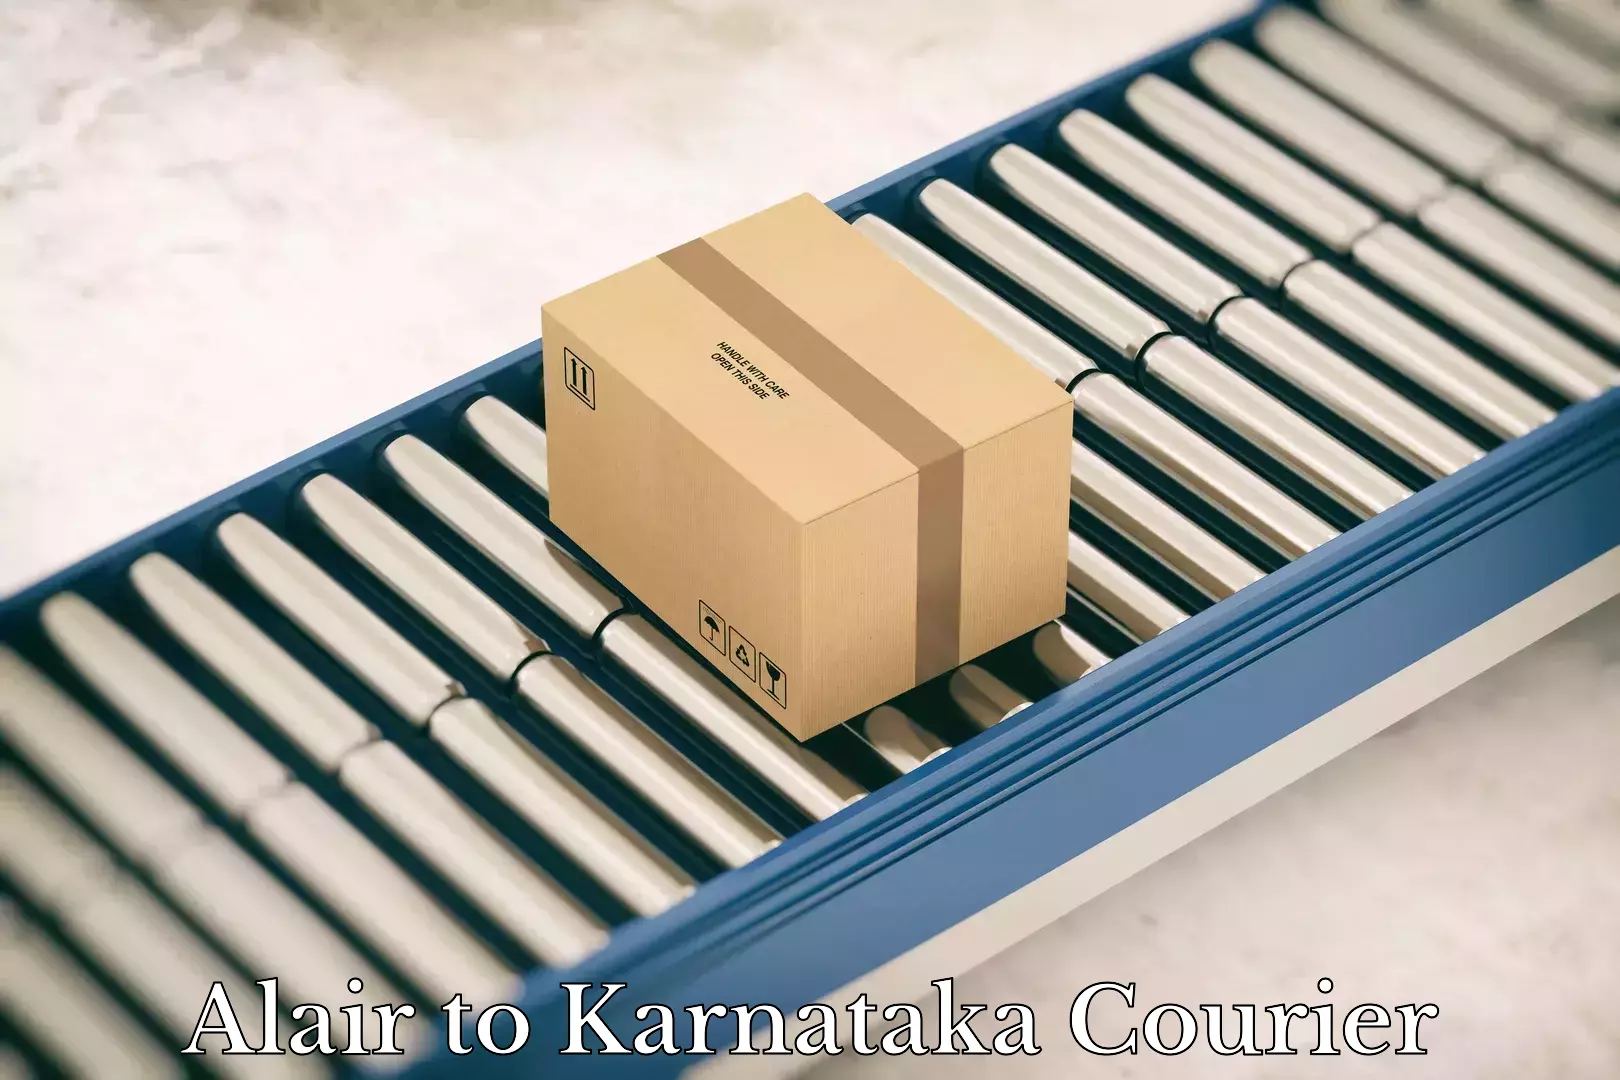 Flexible shipping options Alair to Karnataka